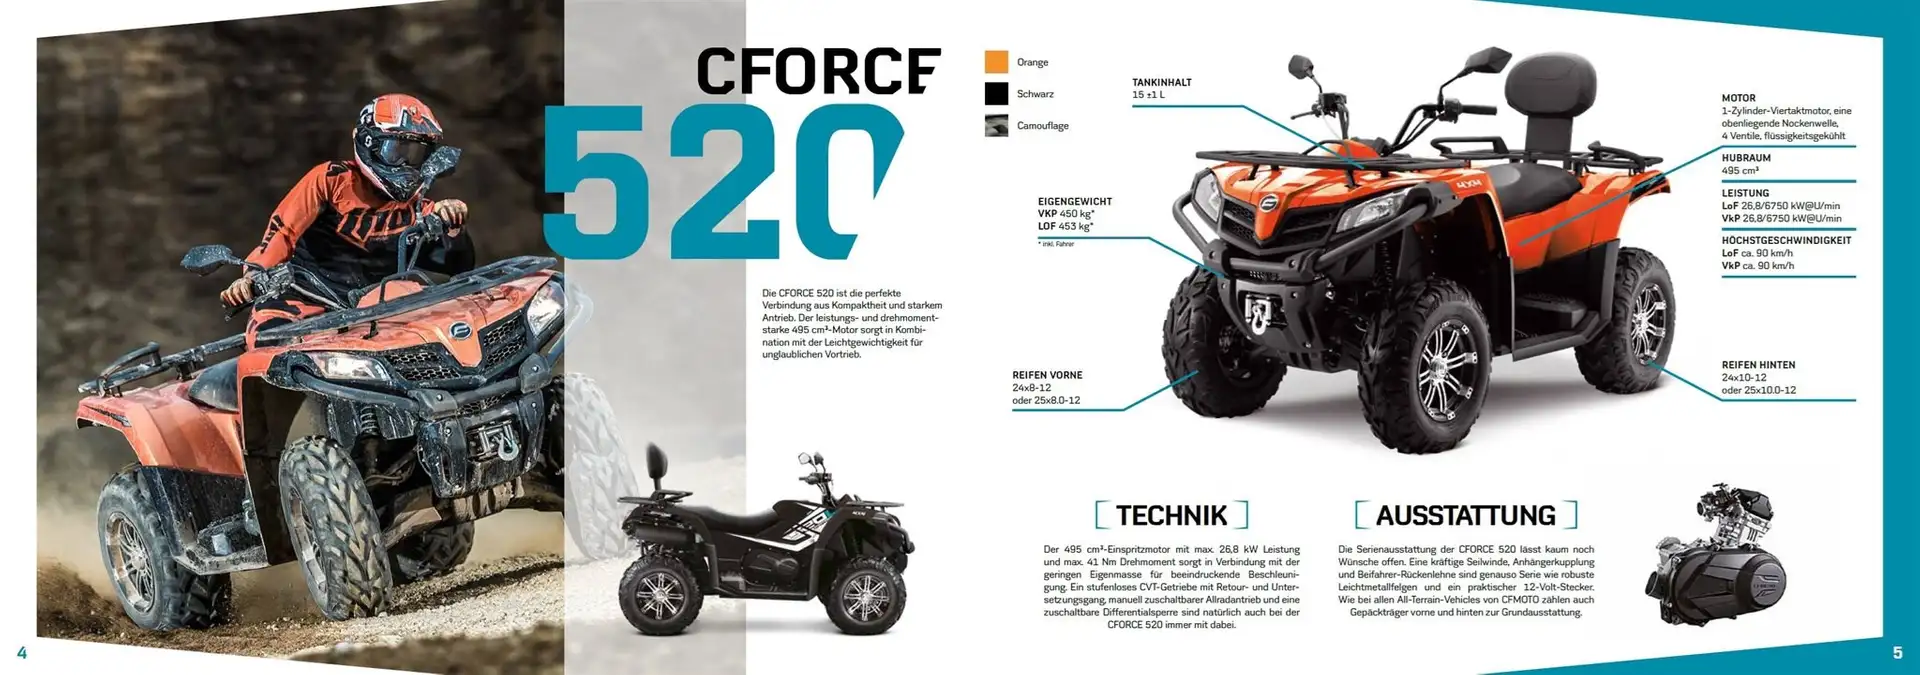 CF Moto CForce 520 Schwarz - 2